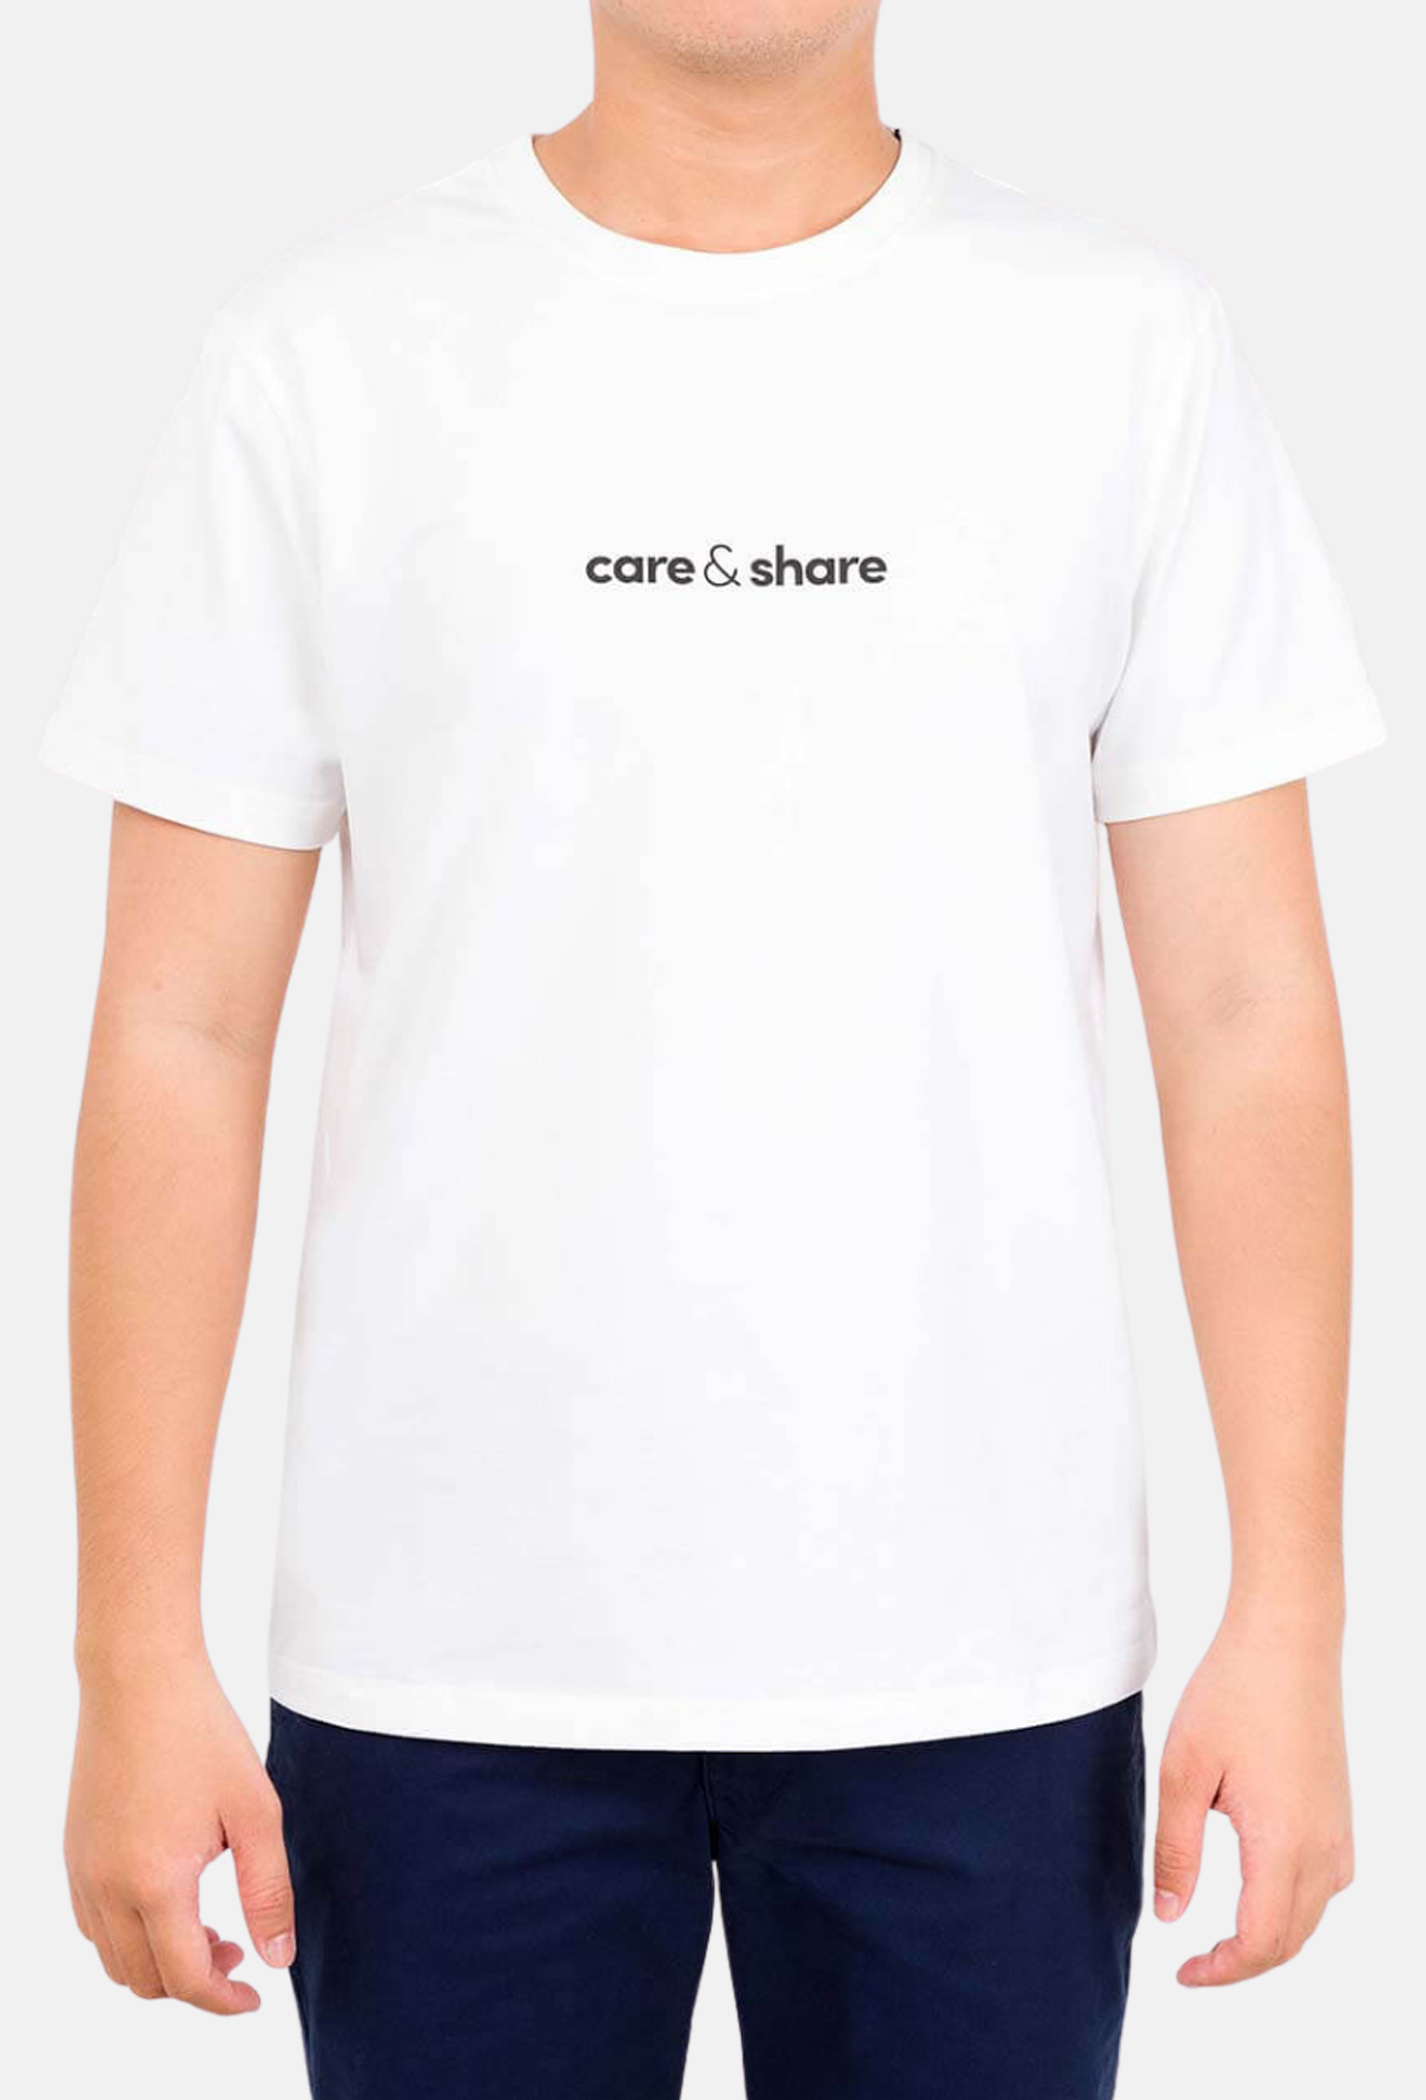 Áo thun nam Cotton Compact phiên bản Premium in Care & Share giữa áo màu trắng  1